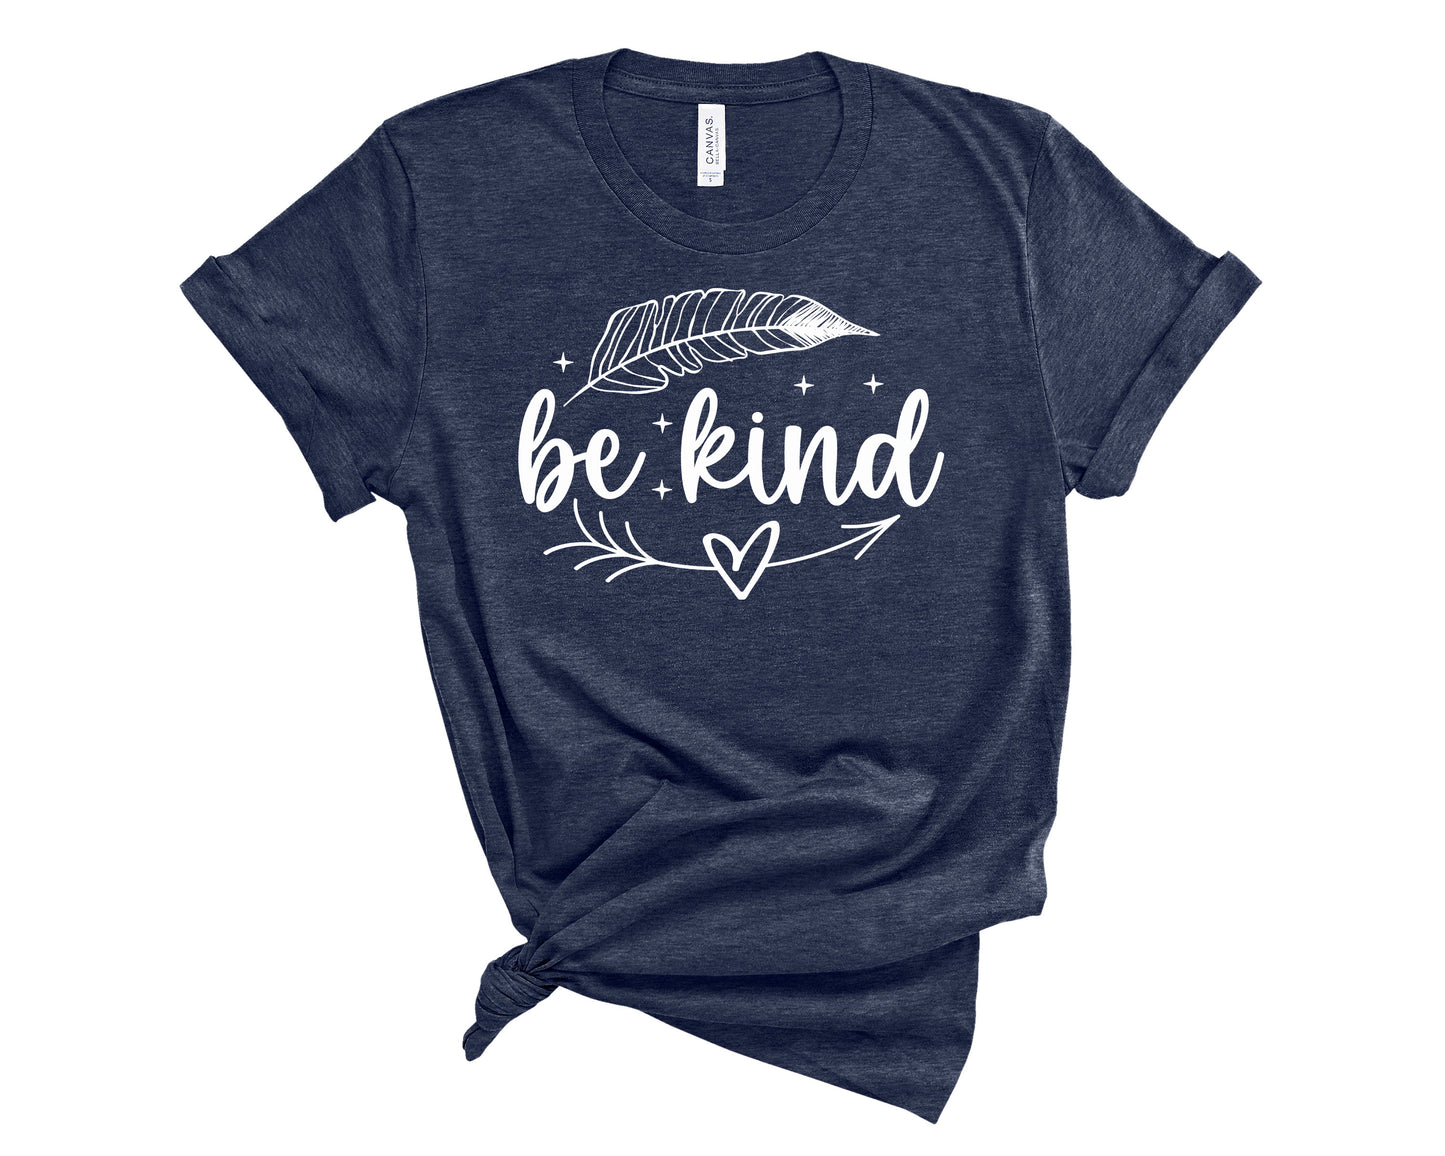 kindness tshirt